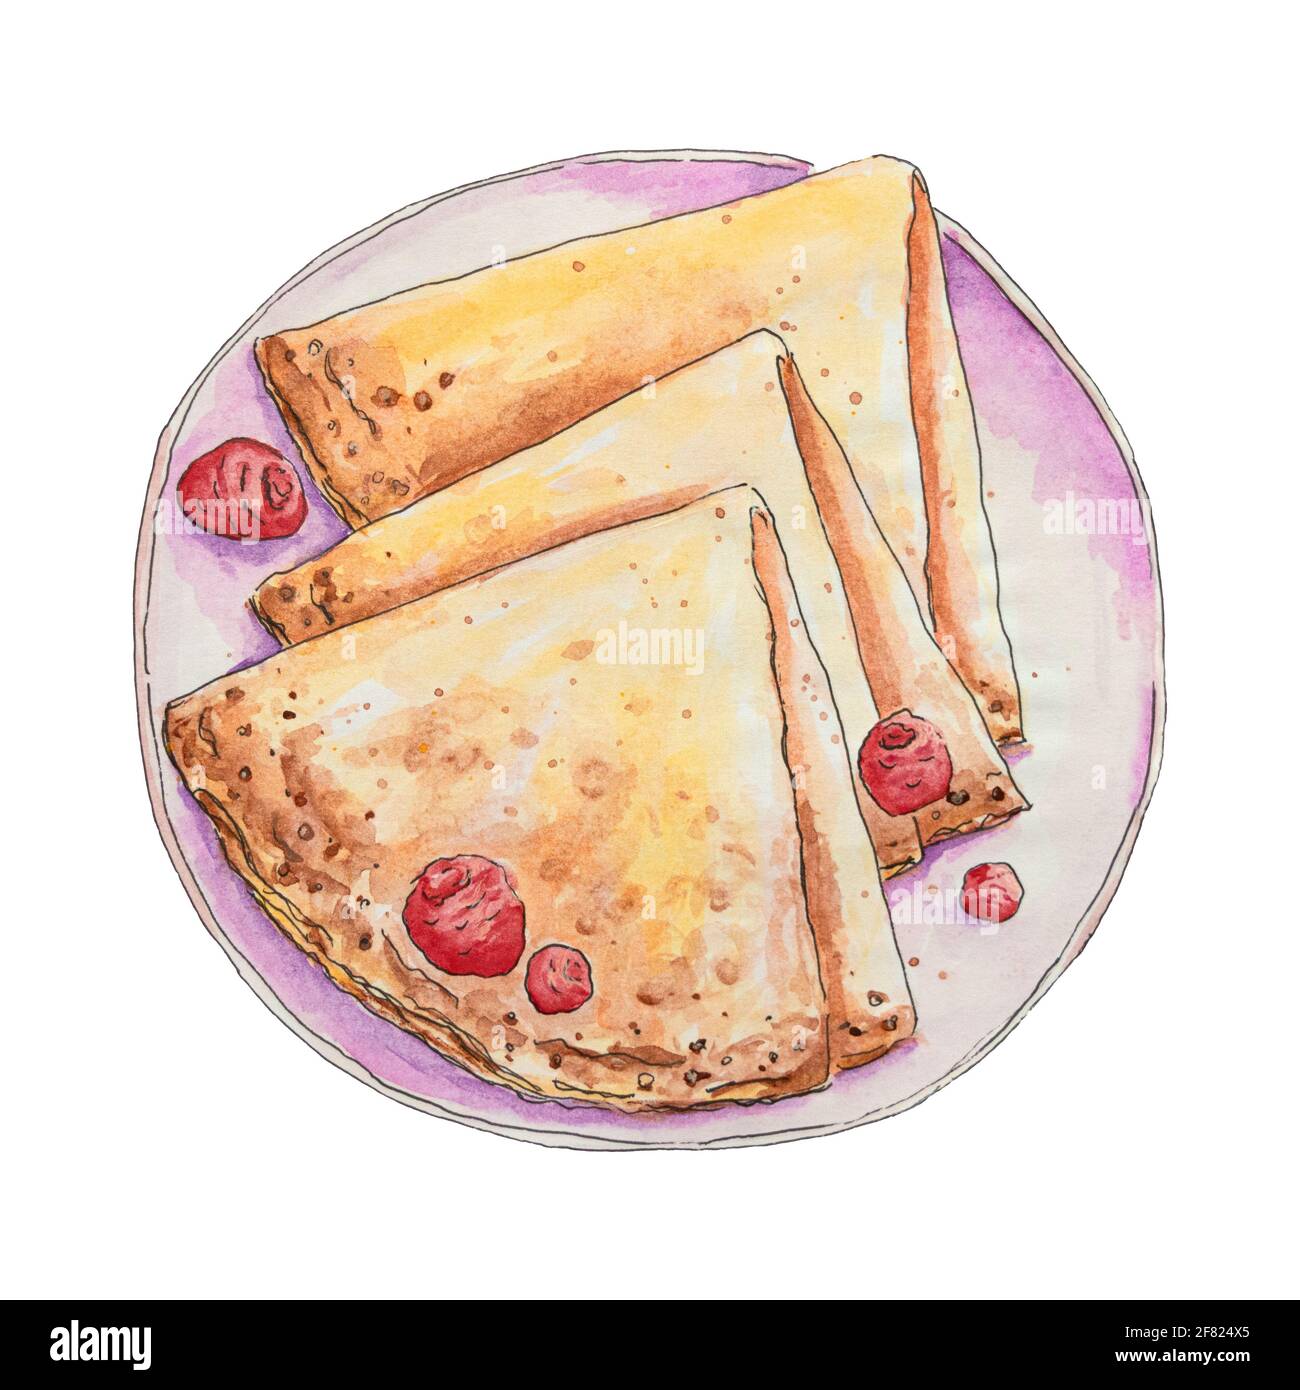 Crêpes aux framboises fraîches sur une assiette. Illustration aquarelle dessinée à la main isolée sur fond blanc Banque D'Images